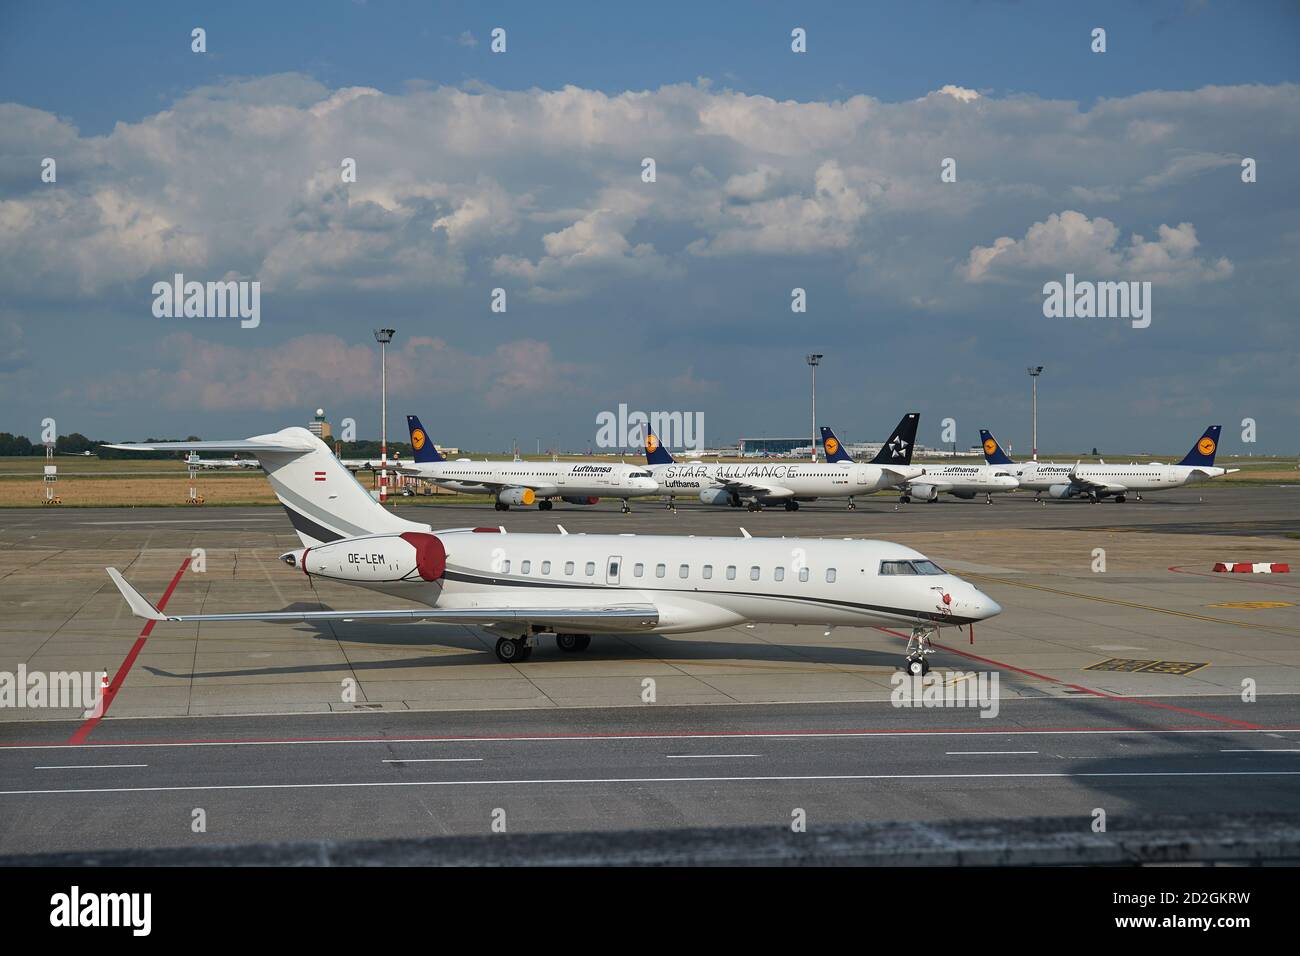 Avions inutilisés et jet privé OE-LEM parfois utilisé par PM Viktor Orban Banque D'Images